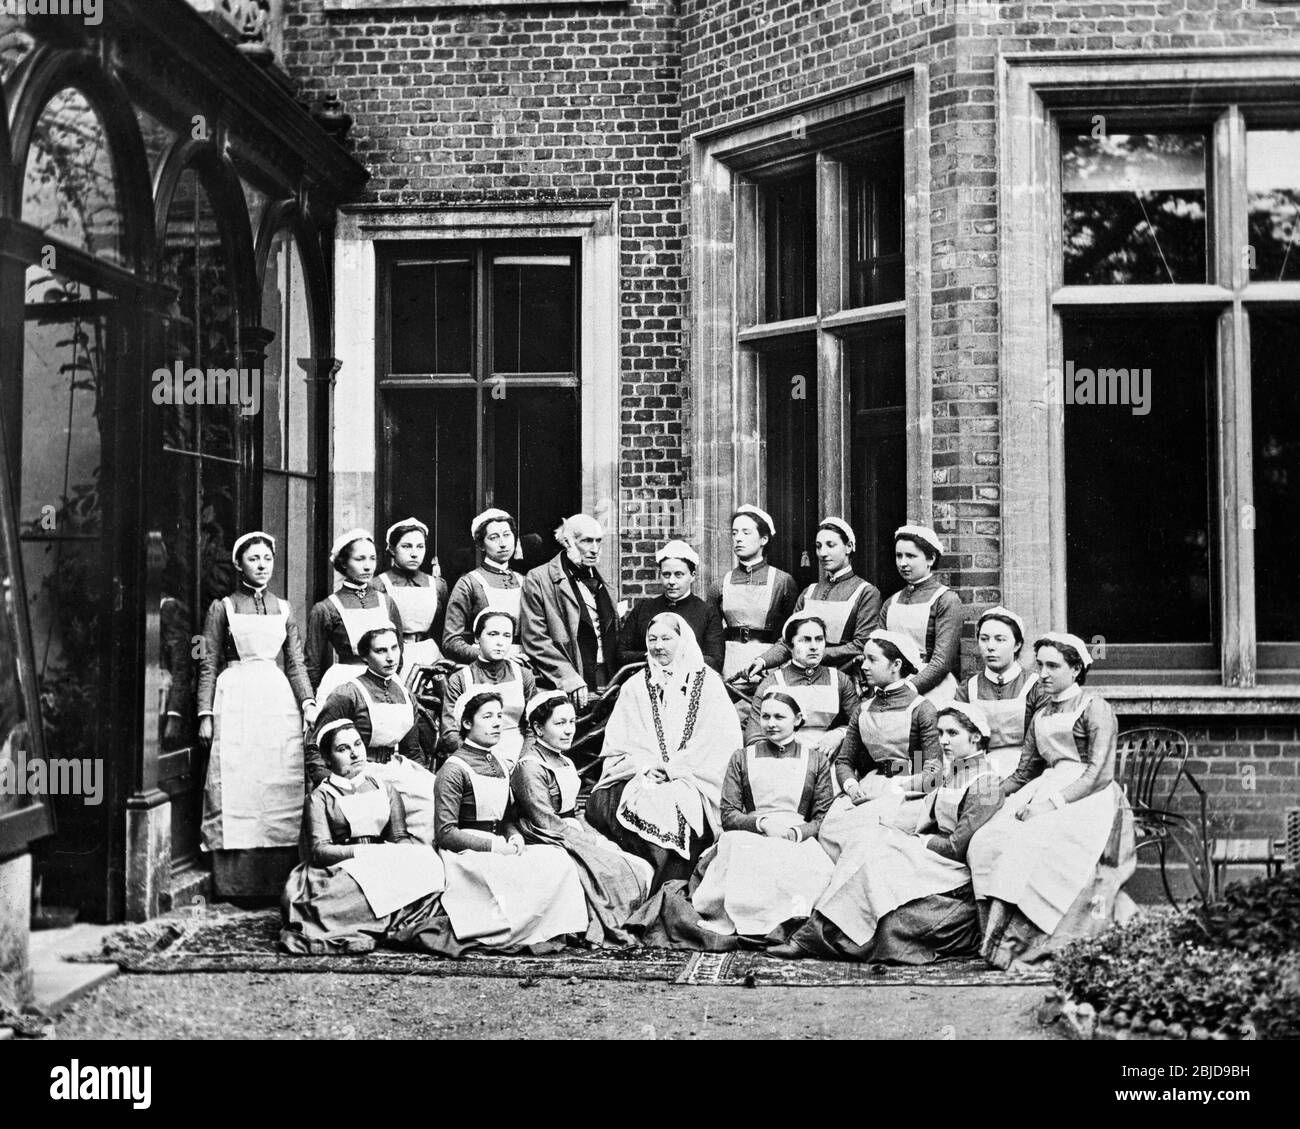 Vintage schwarz-weiß viktorianischen Foto im Jahr 1886 aufgenommen. Foto zeigt Krankenschwester Florence Nightingale und Krankenschwestern von der Nightingale Training School im Claydon House, wo sie einen Teil ihres Lebens verbrachte. Das Haus gehörte Sir Harry Verney, der auch auf dem Foto zu sehen ist. Stockfoto